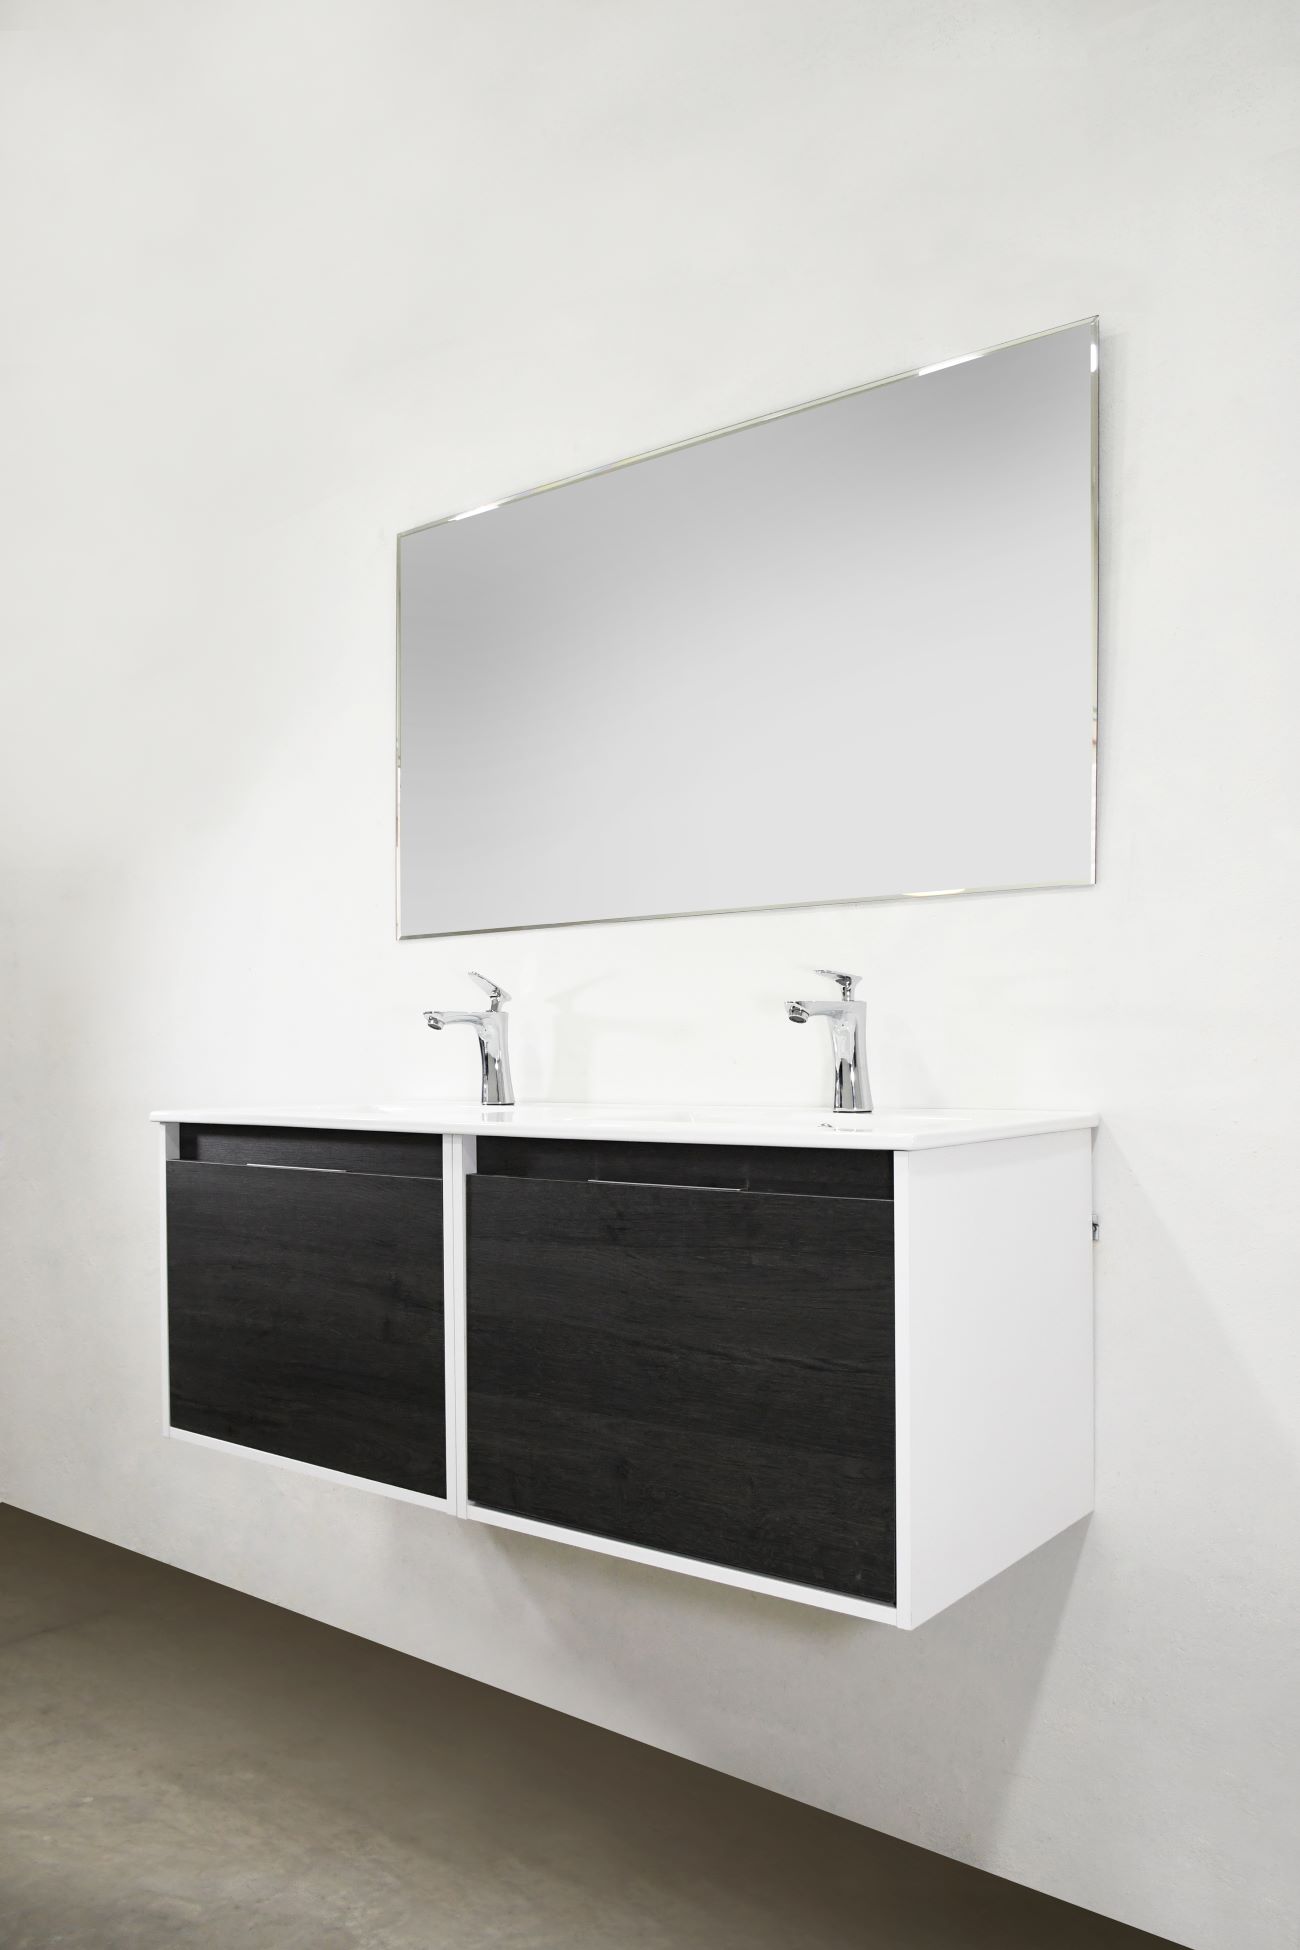 Set Mueble para baño suspendido (Gabinete) VA120EB, con dos cajoneras y dos cajones interiores. El set incluye: lavabo de cerámica, espejo y monomando. Color Ebony.